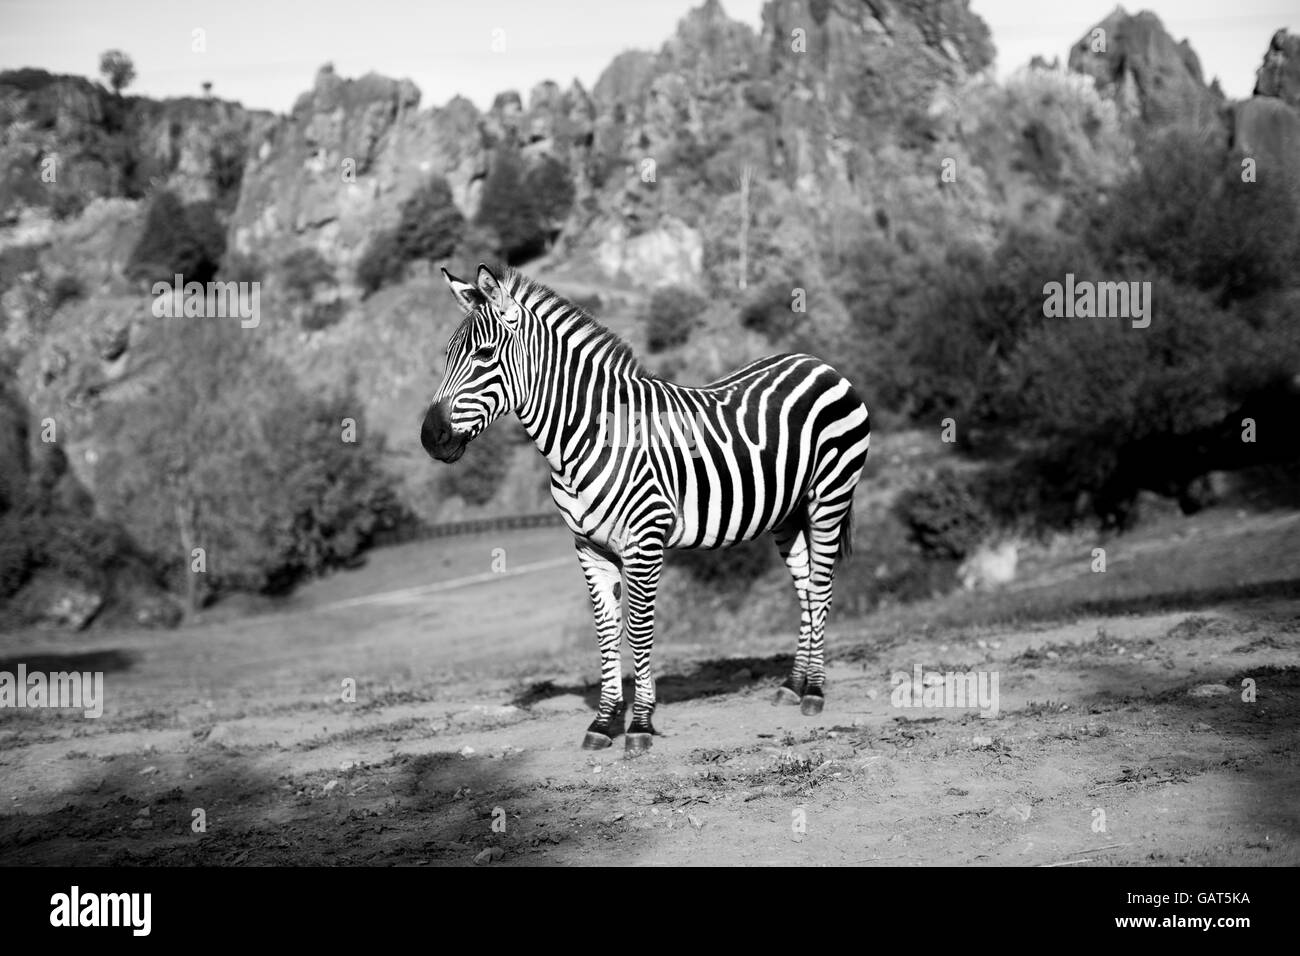 a zebra stands alone in a safari landscape Stock Photo